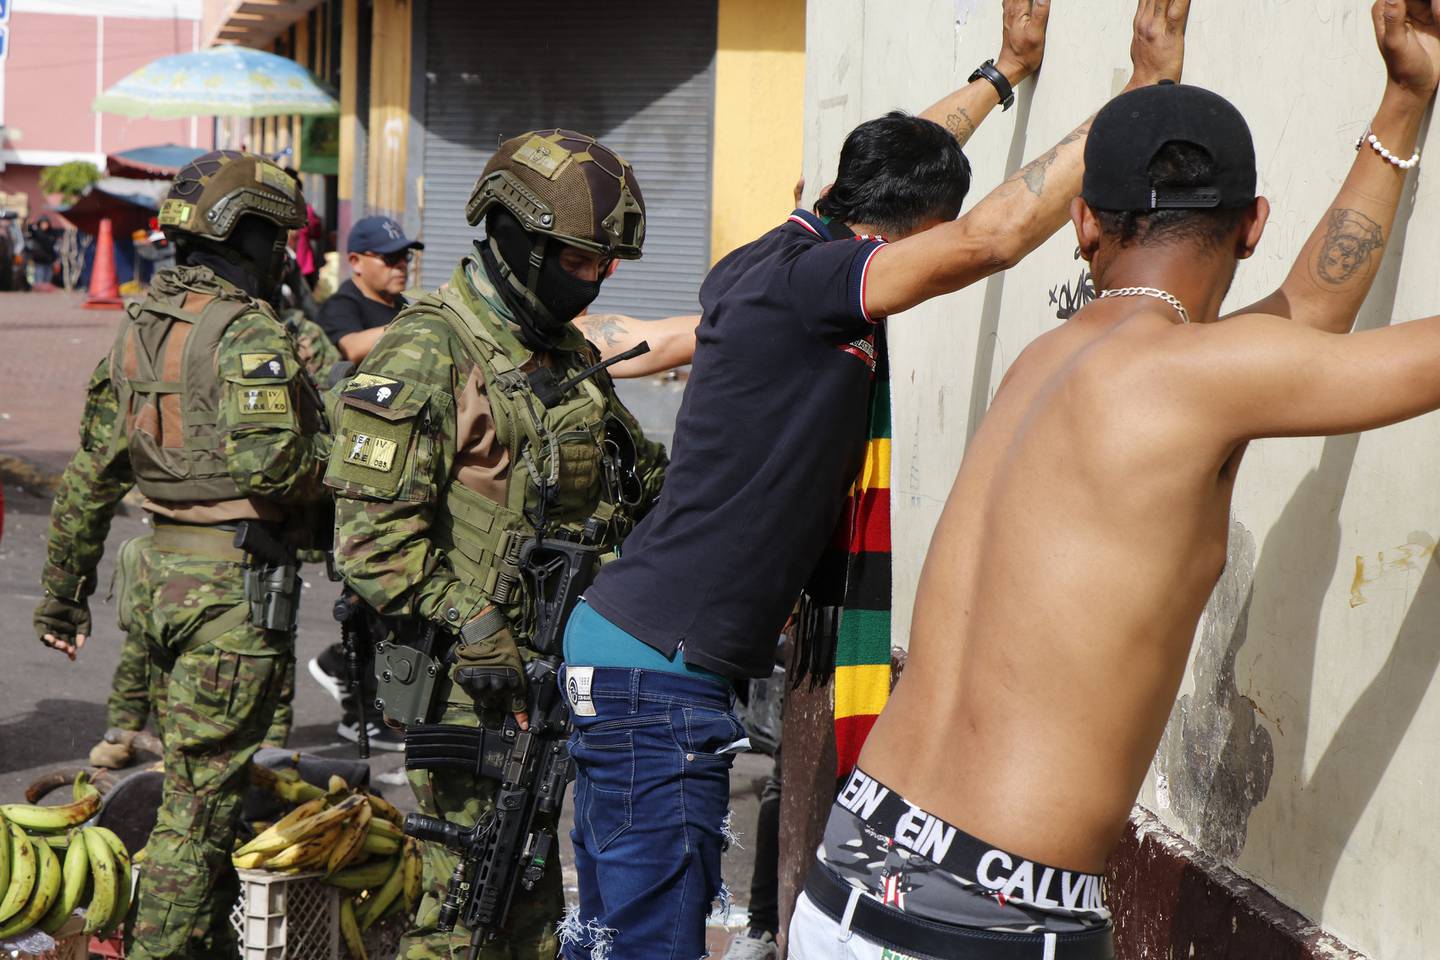 El presidente de Ecuador, Daniel Noboa, dio órdenes el martes de "neutralizar" a las bandas criminales después de que hombres armados irrumpieran y abrieran fuego en un estudio de televisión.